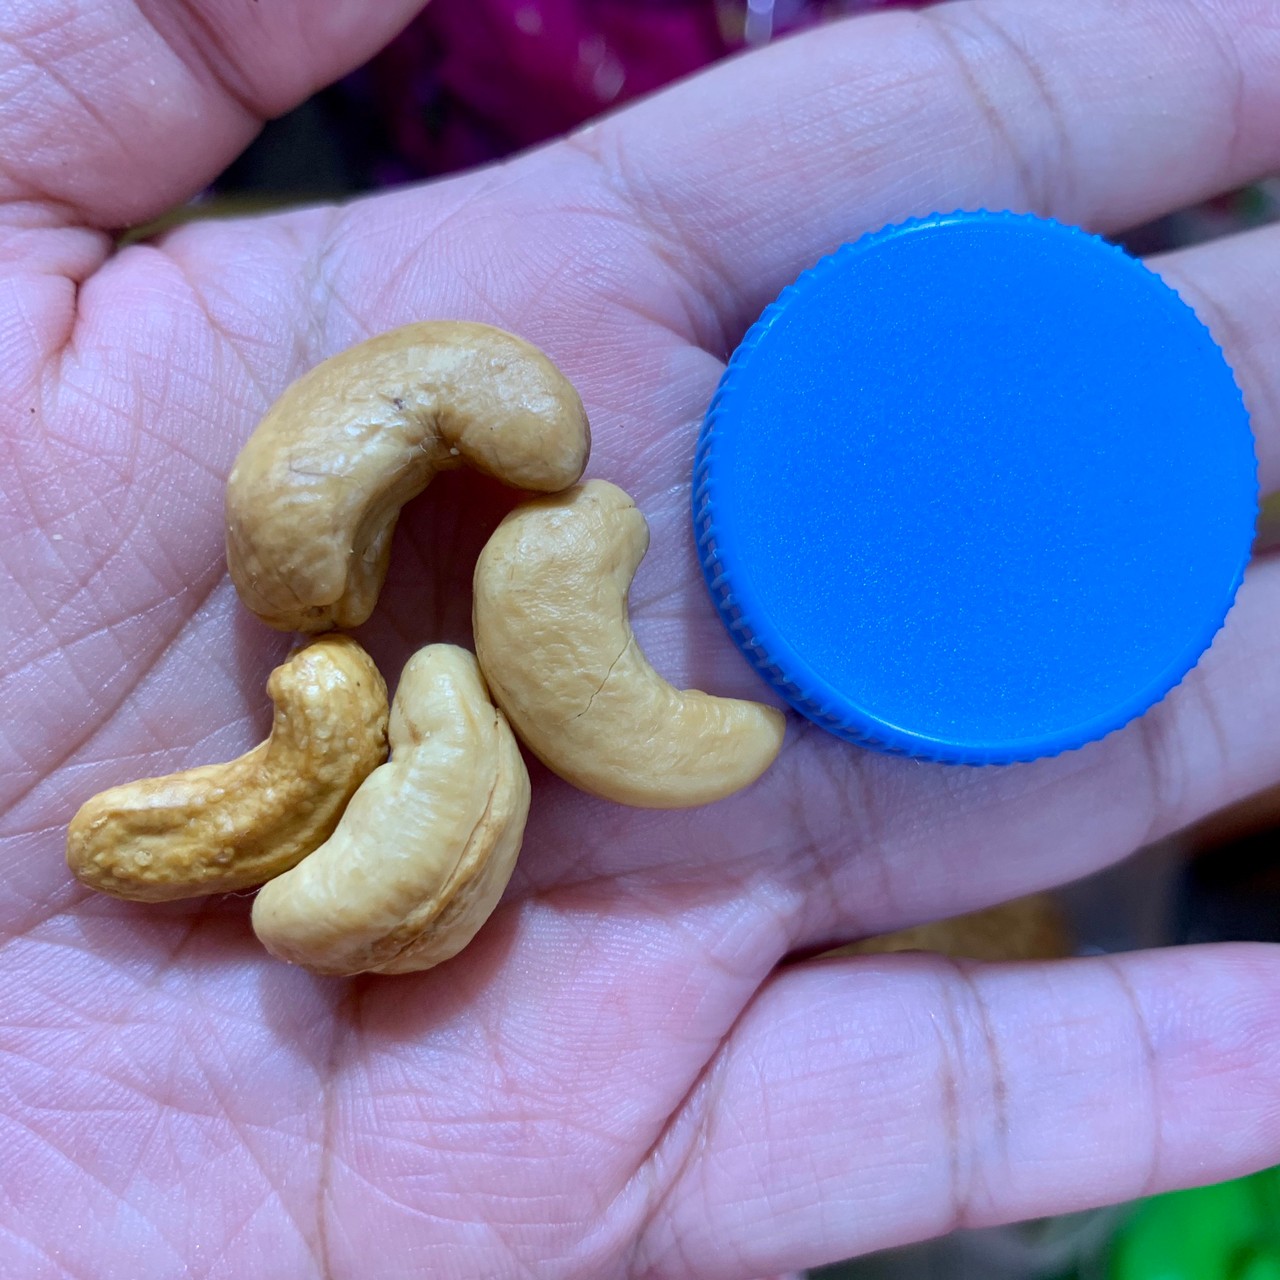 เกี่ยวกับสินค้า [50g] เม็ดมะม่วงหิมพานต์ ขนาดกลาง Cashew nuts อบเกลือ รสกลมกล่อม หอมใหม่ ไม่อับ เม็ดมะม่วงหิม เม็ดมะม่วงหิมพาน เม็ดมะม่วงหินมพาน